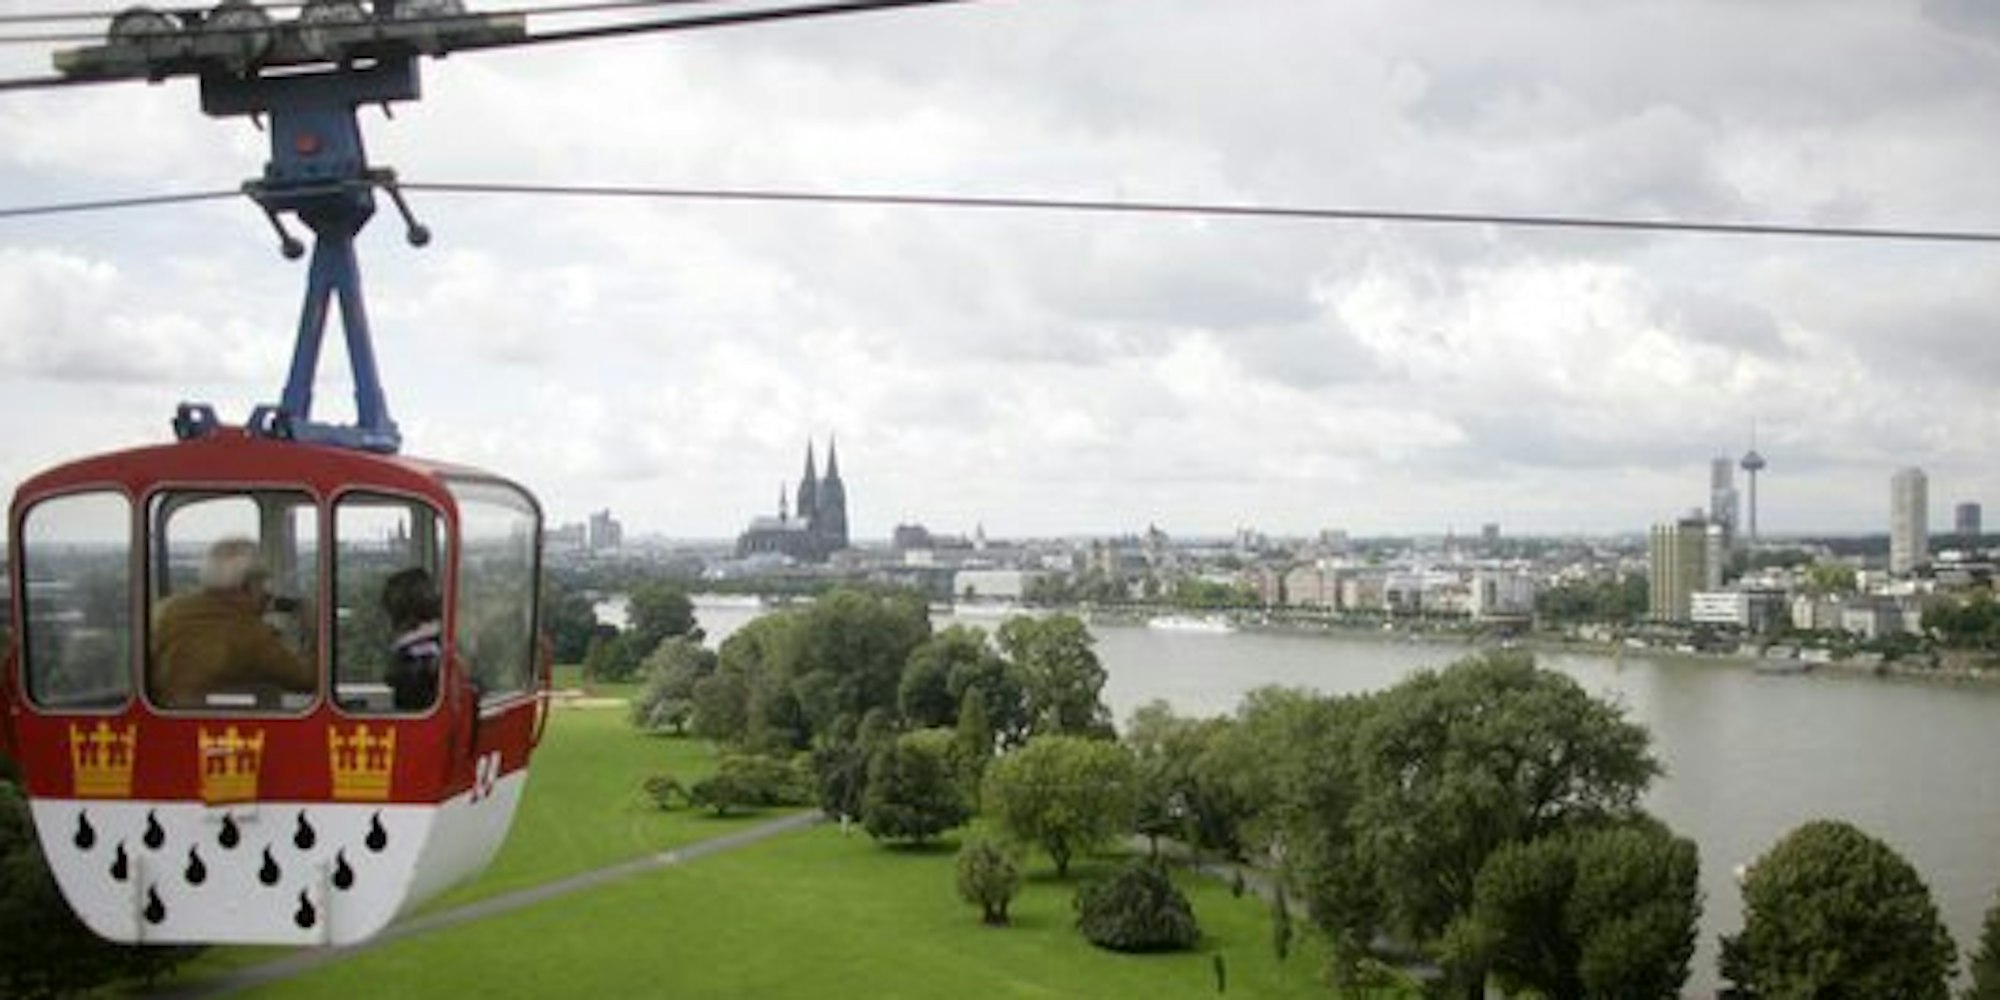 Eine Gondel der Kölner Rheinseilbahn mit dem Stadtwappen - aber warum ist es eigentlich rot-weiß?